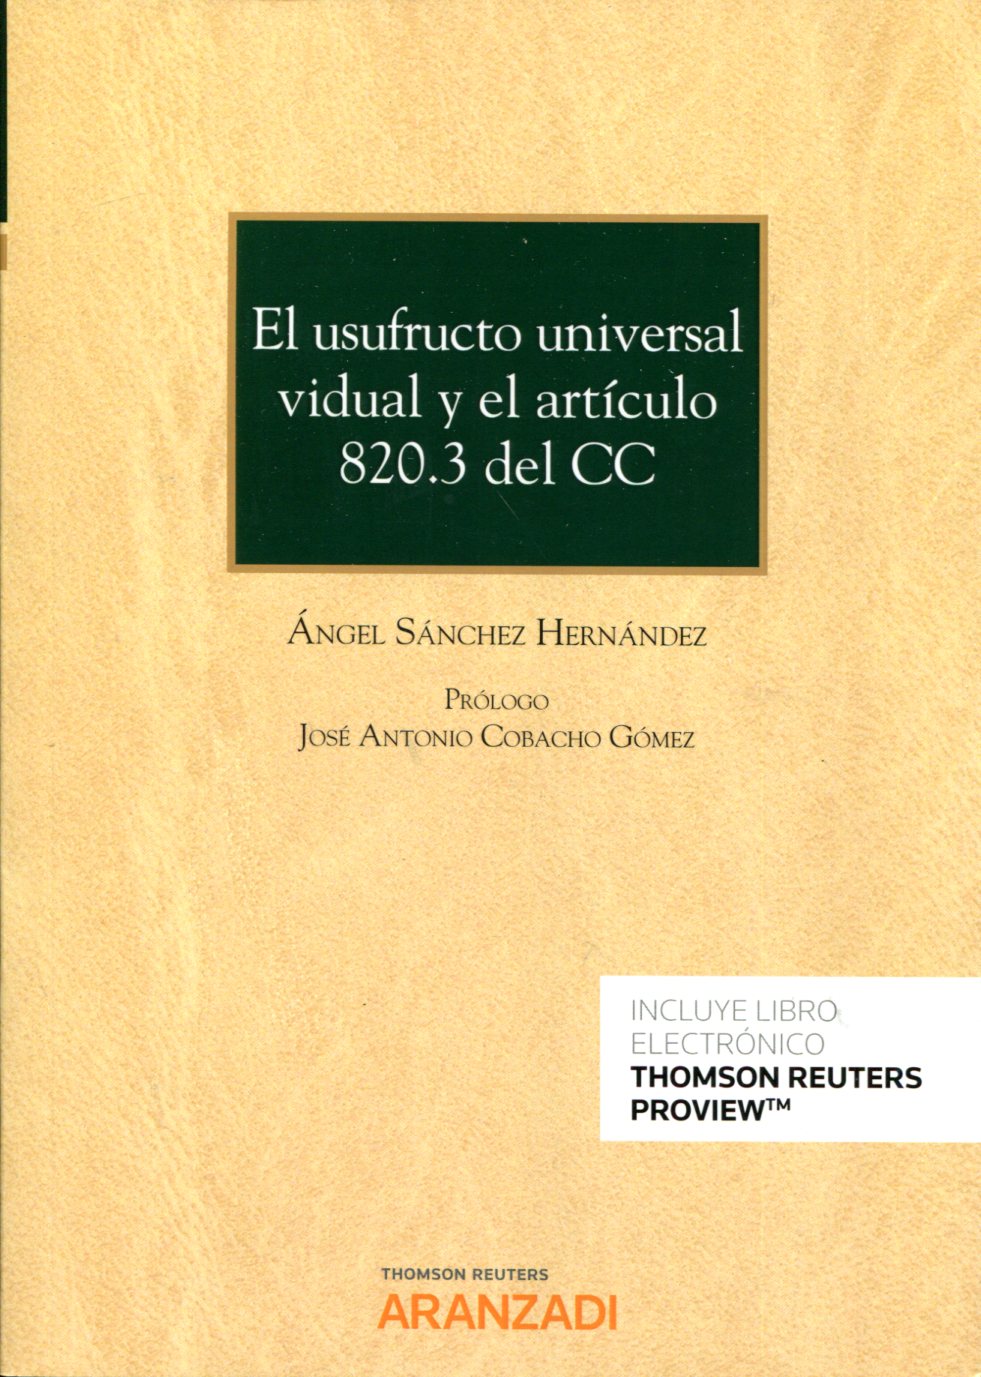 Libro El usufructo universal vidual y el artículo 820.3 del CC